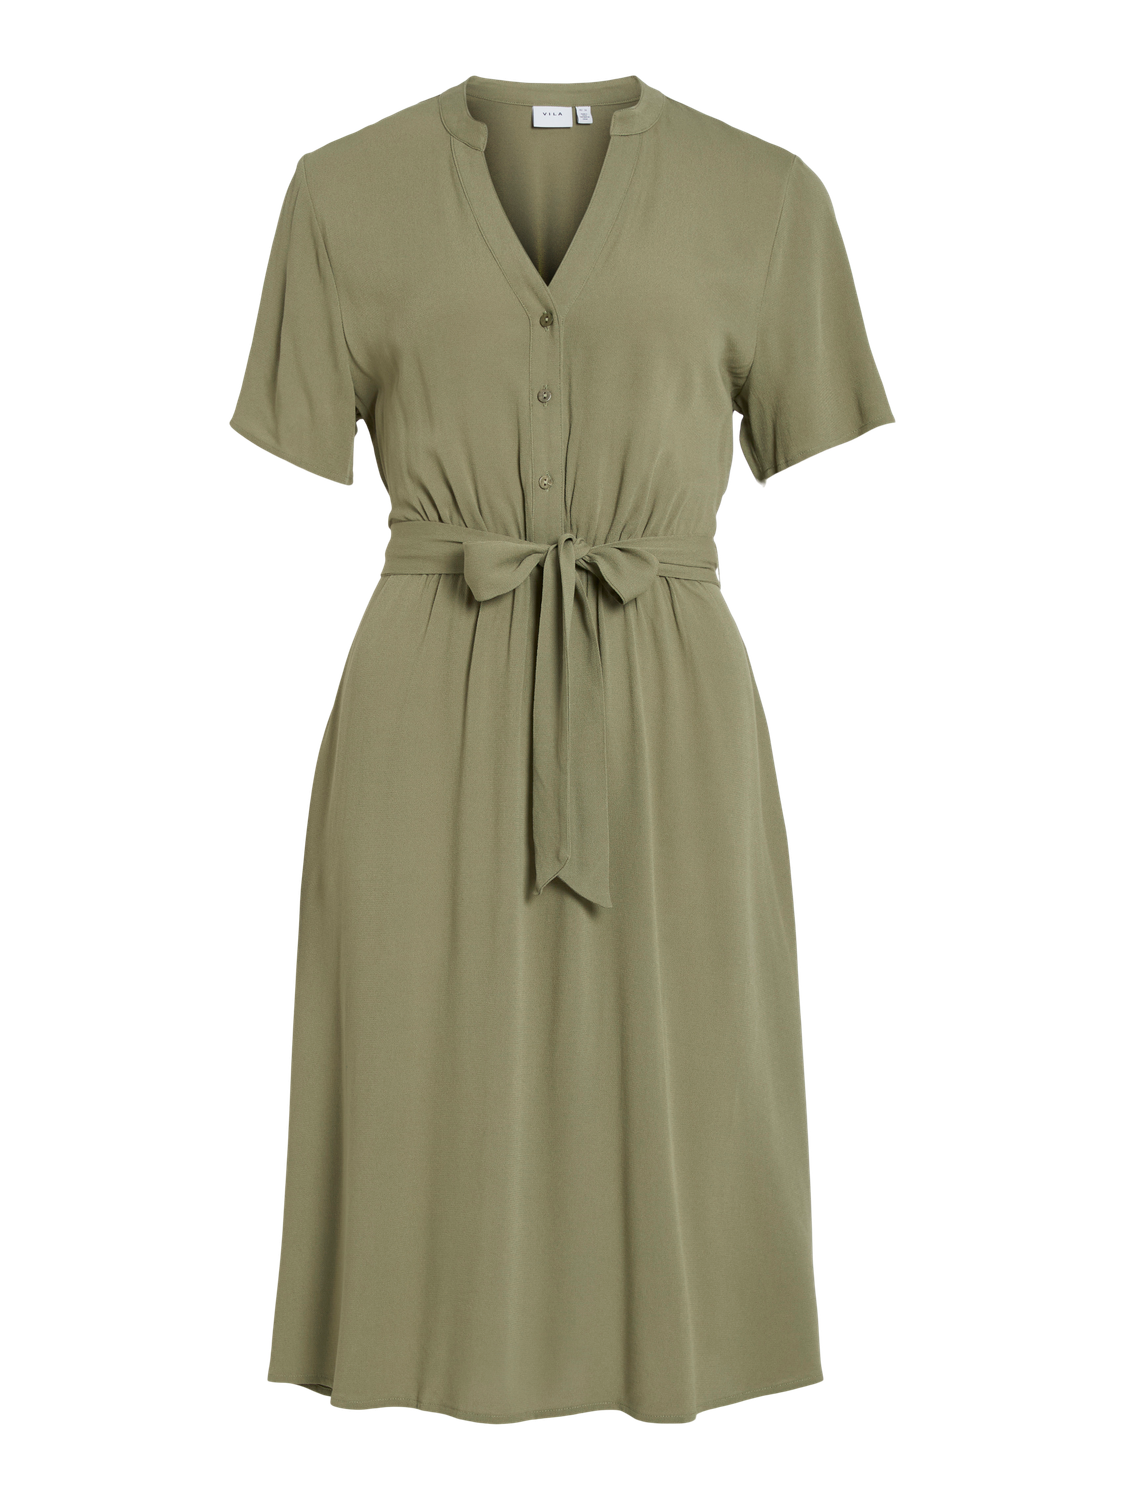 VIMOASHLY Dress - Oil Green